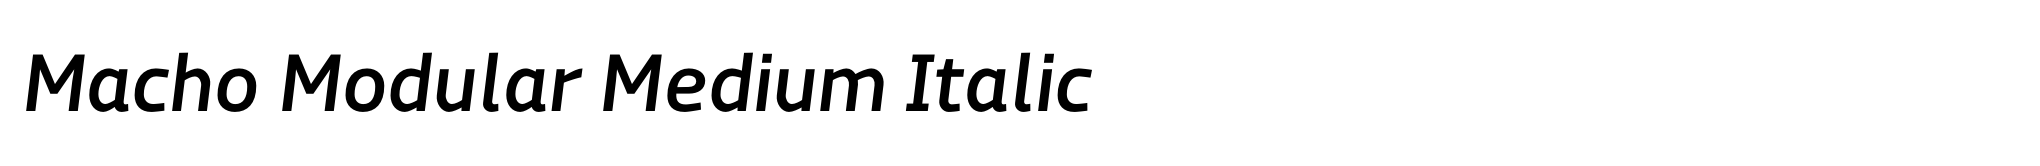 Macho Modular Medium Italic image